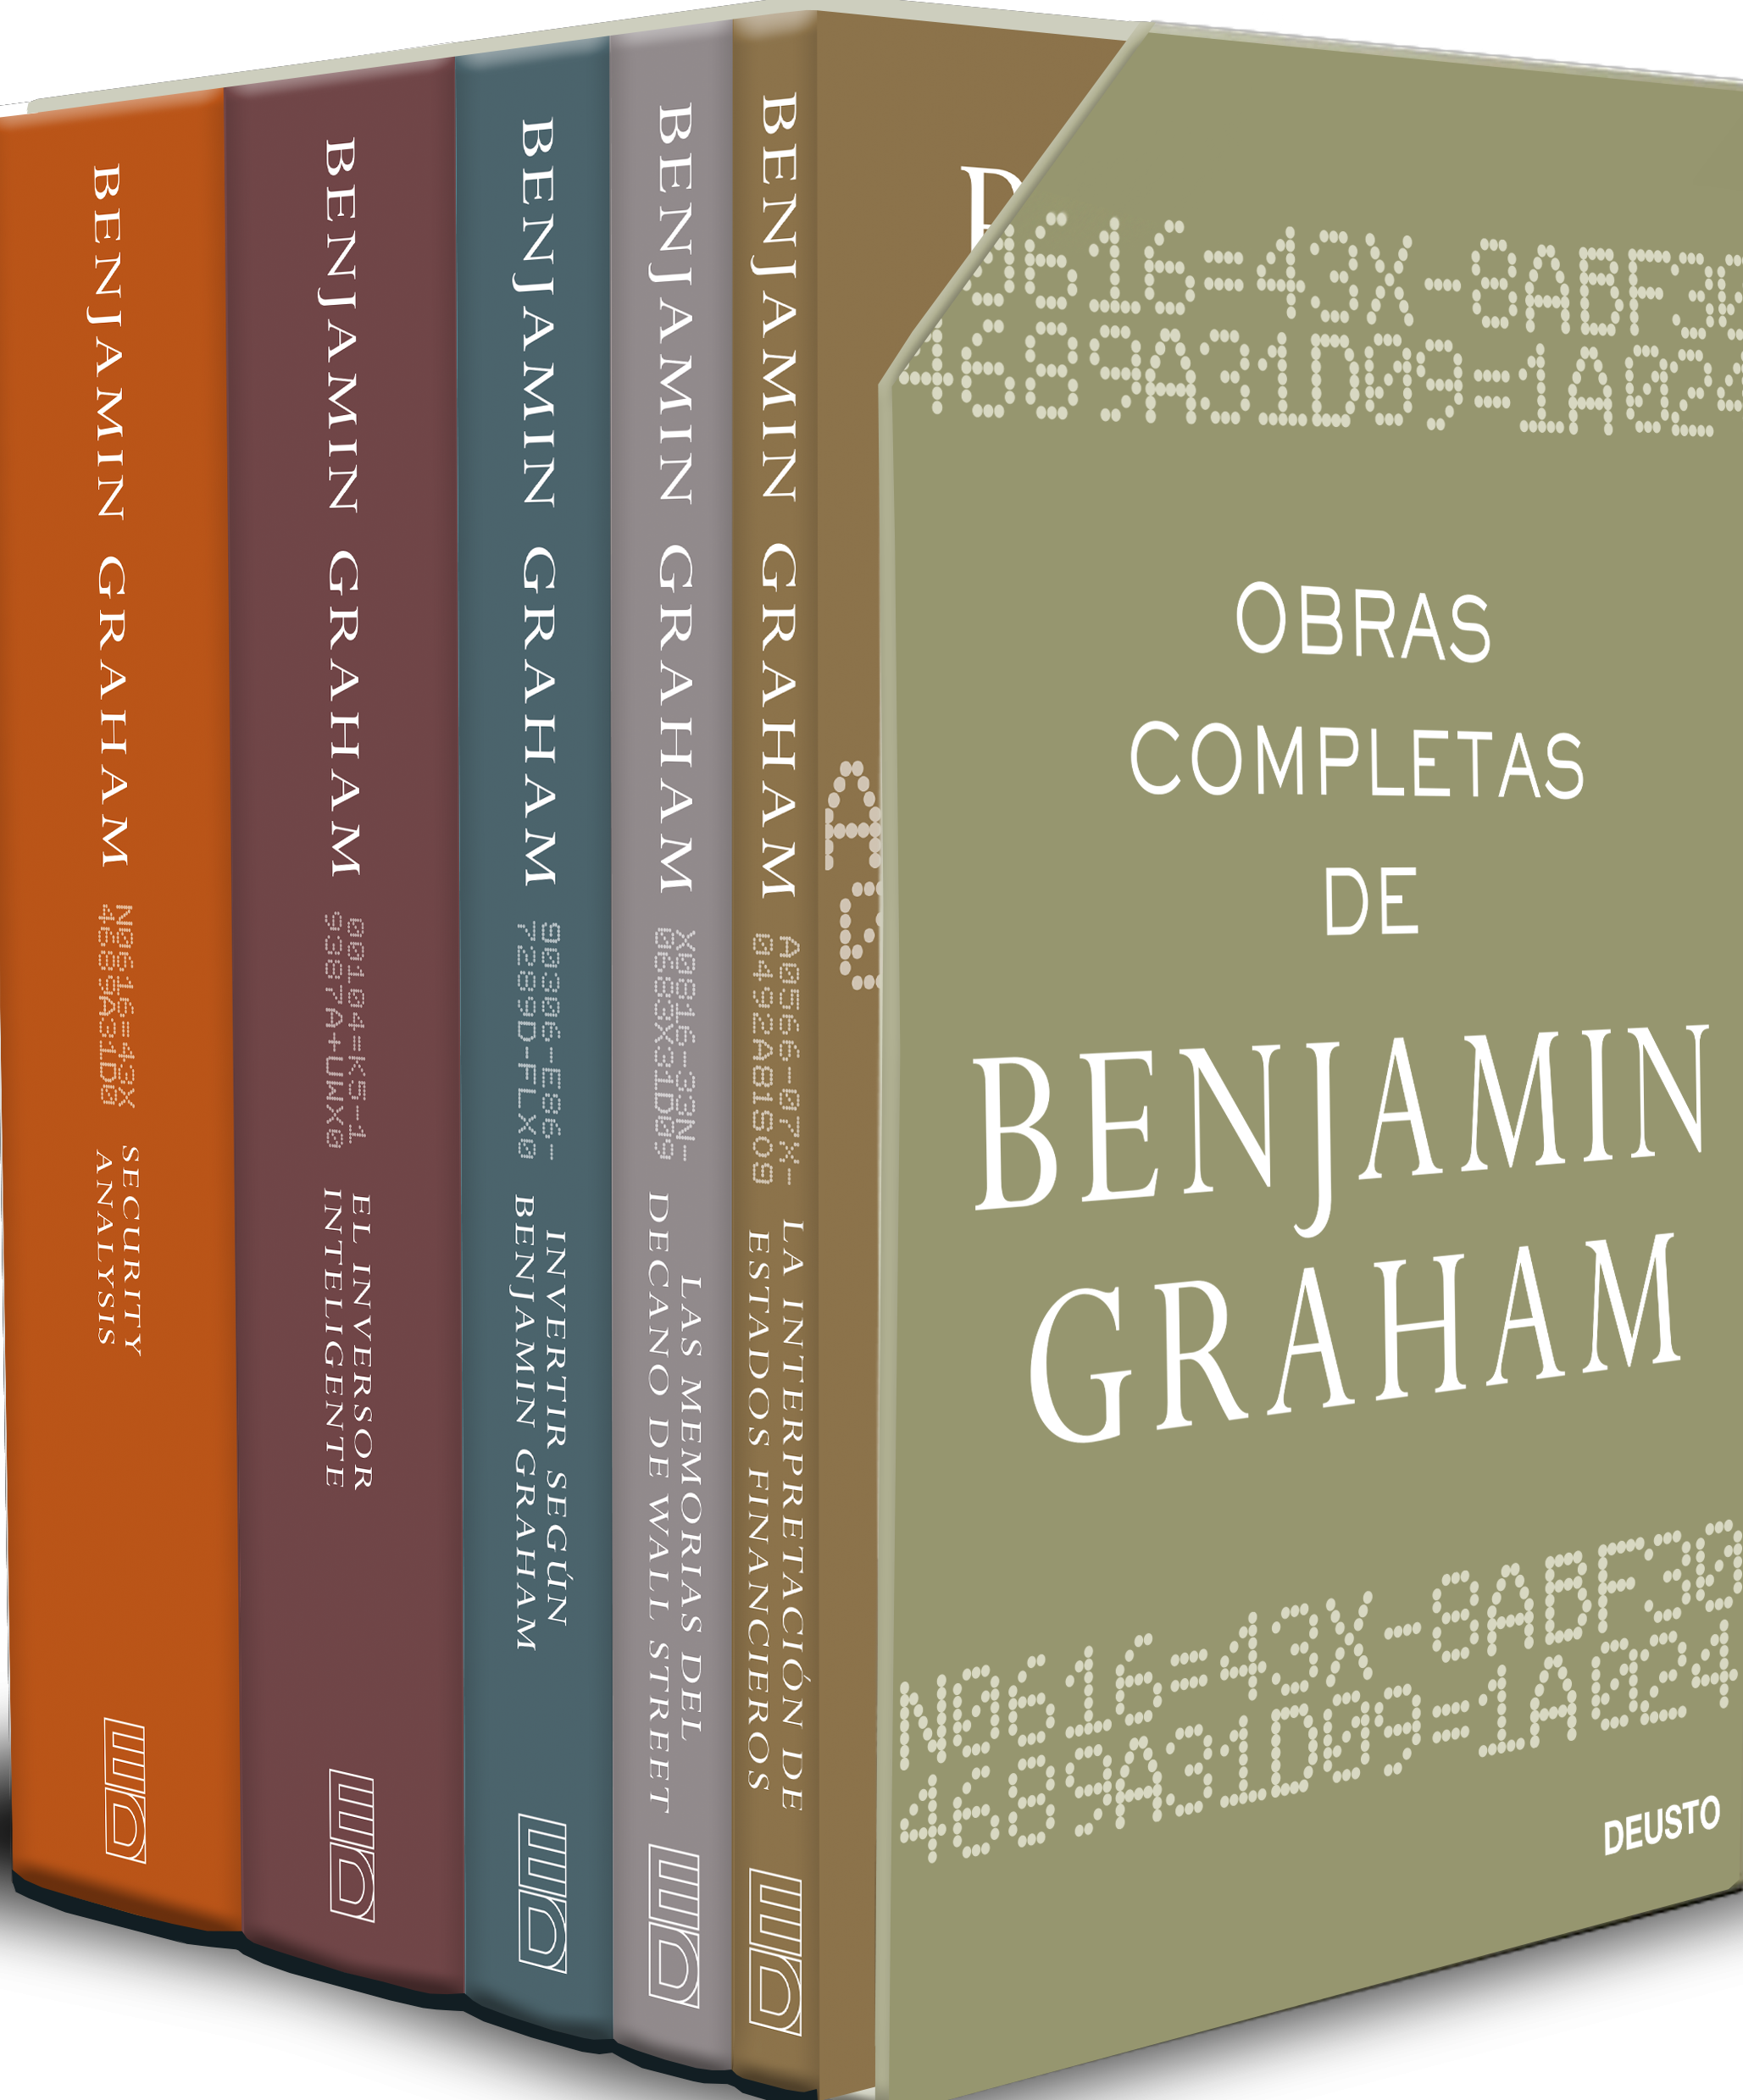 El Lector - Considerado el más importante consejero en inversión del siglo  XX, Benjamin Graham enseñó e inspiró a financieros de todo el mundo.  Presentó su filosofía, basada en el concepto de “